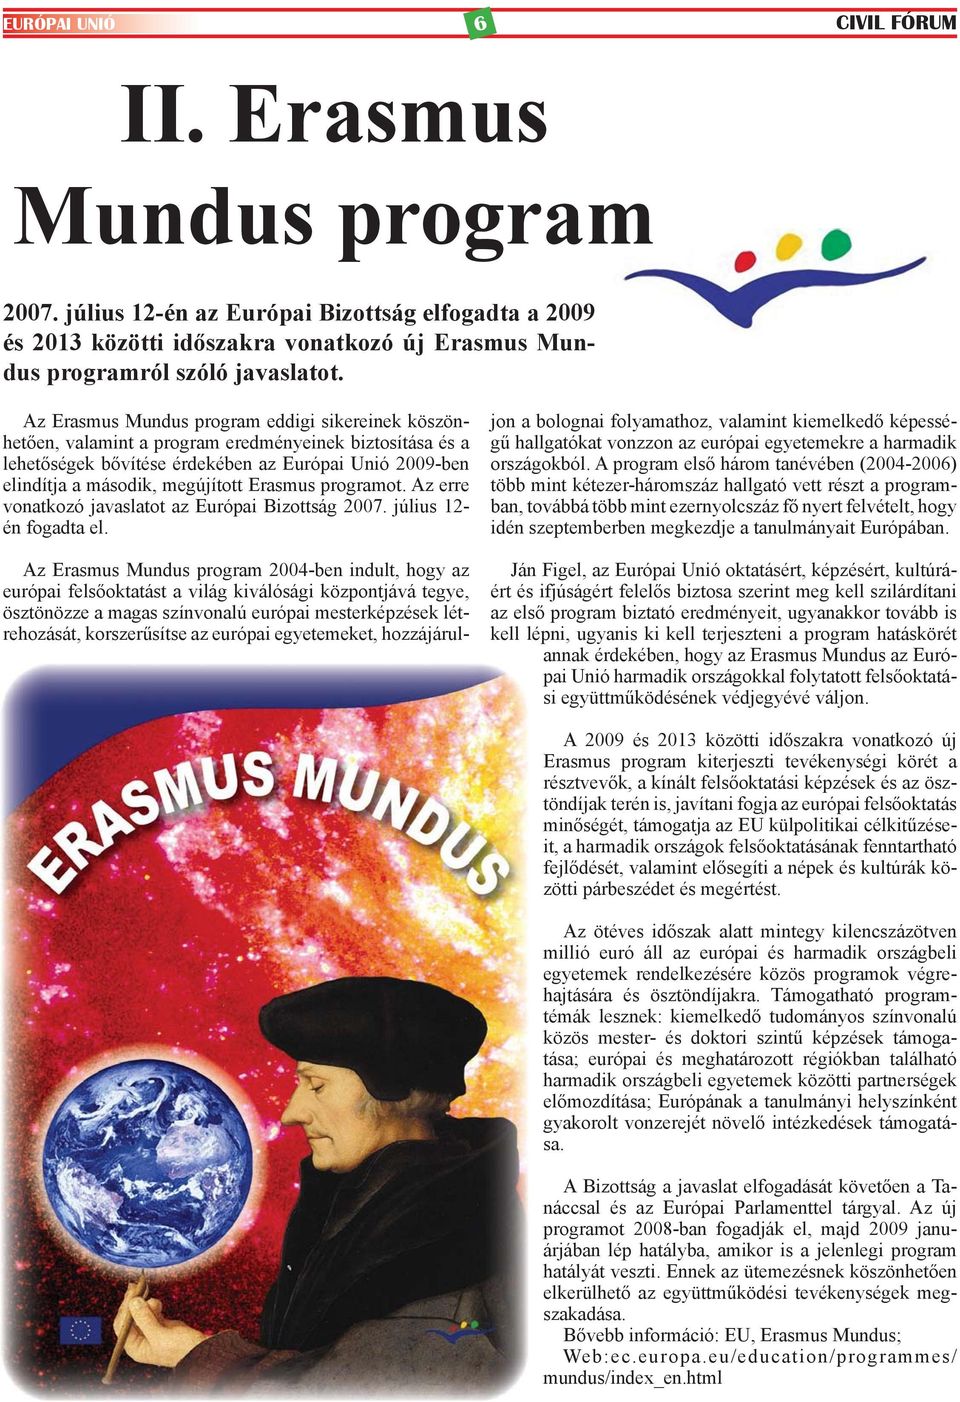 Erasmus programot. Az erre vonatkozó javaslatot az Európai Bizottság 2007. július 12- én fogadta el.